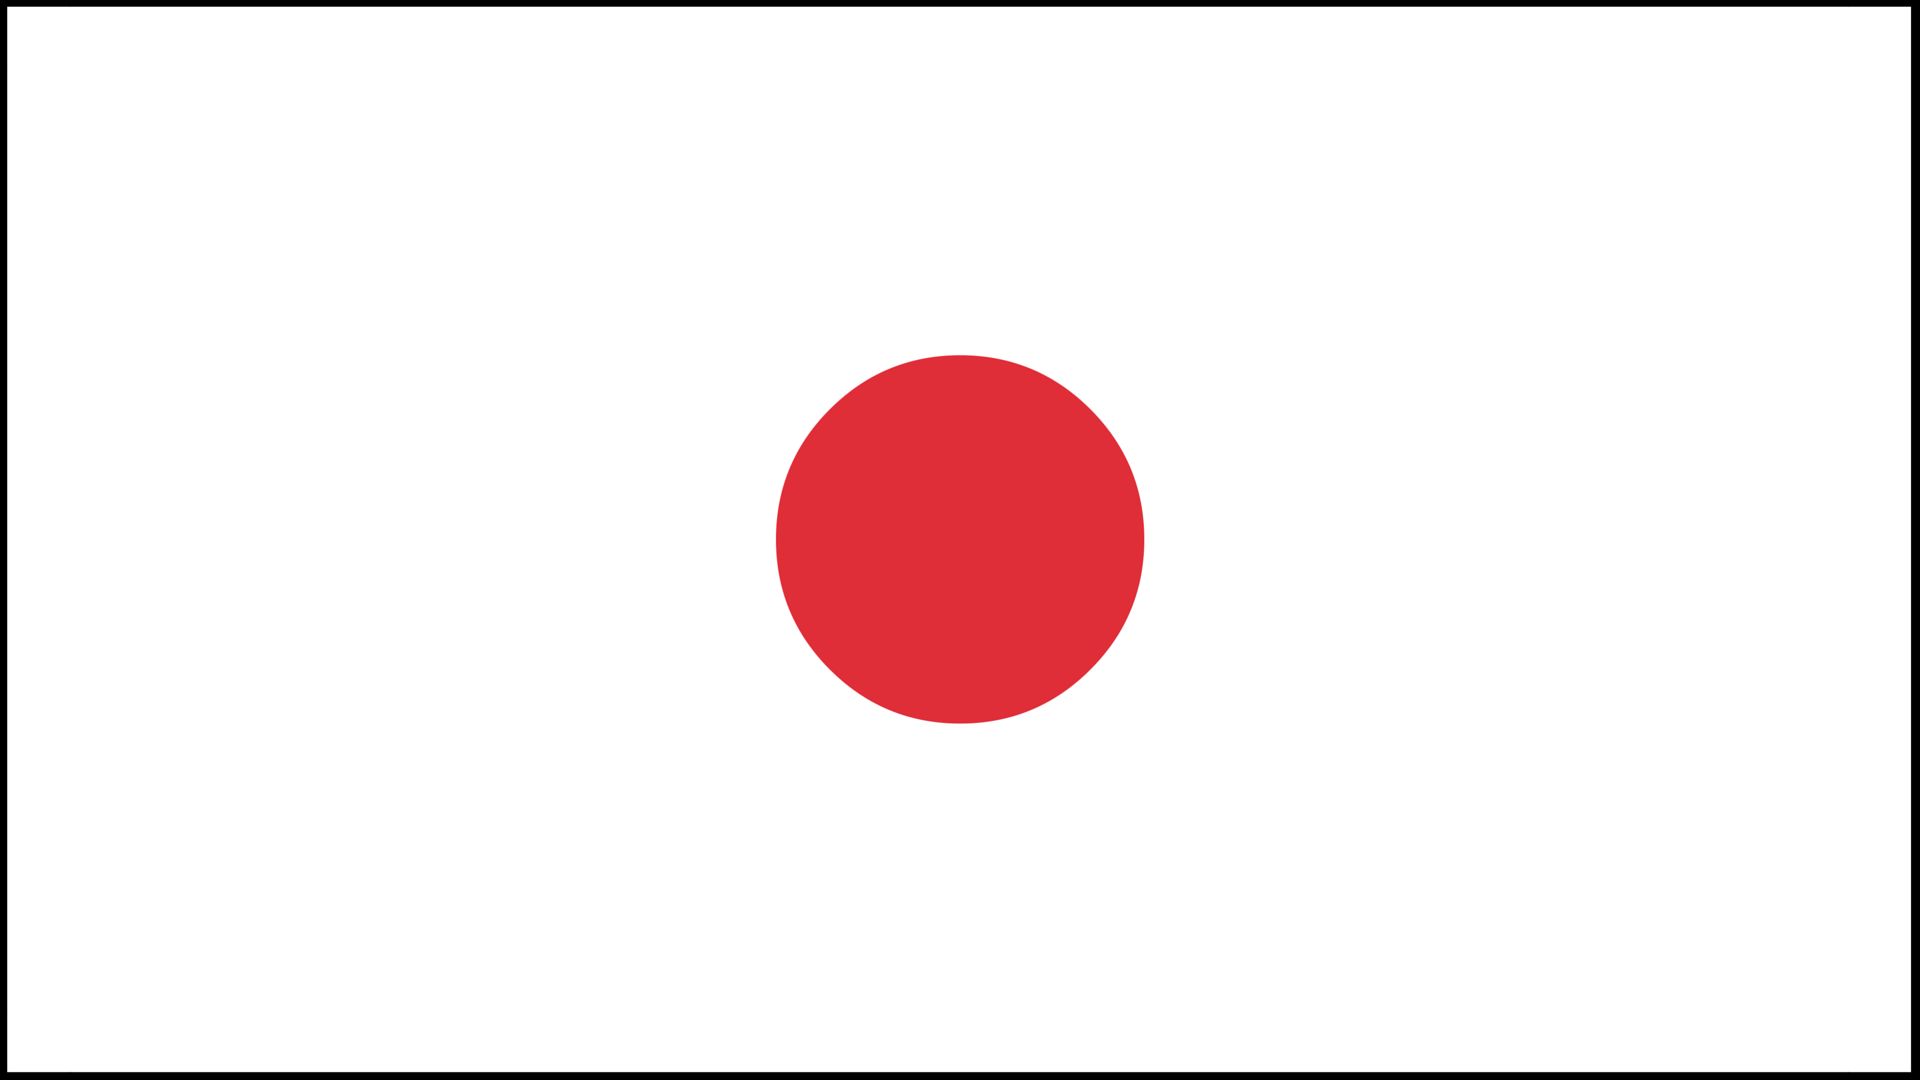 Скачать обои Флаг Японии на телефон в высоком качестве, вертикальные  картинки Флаг Японии бесплатно